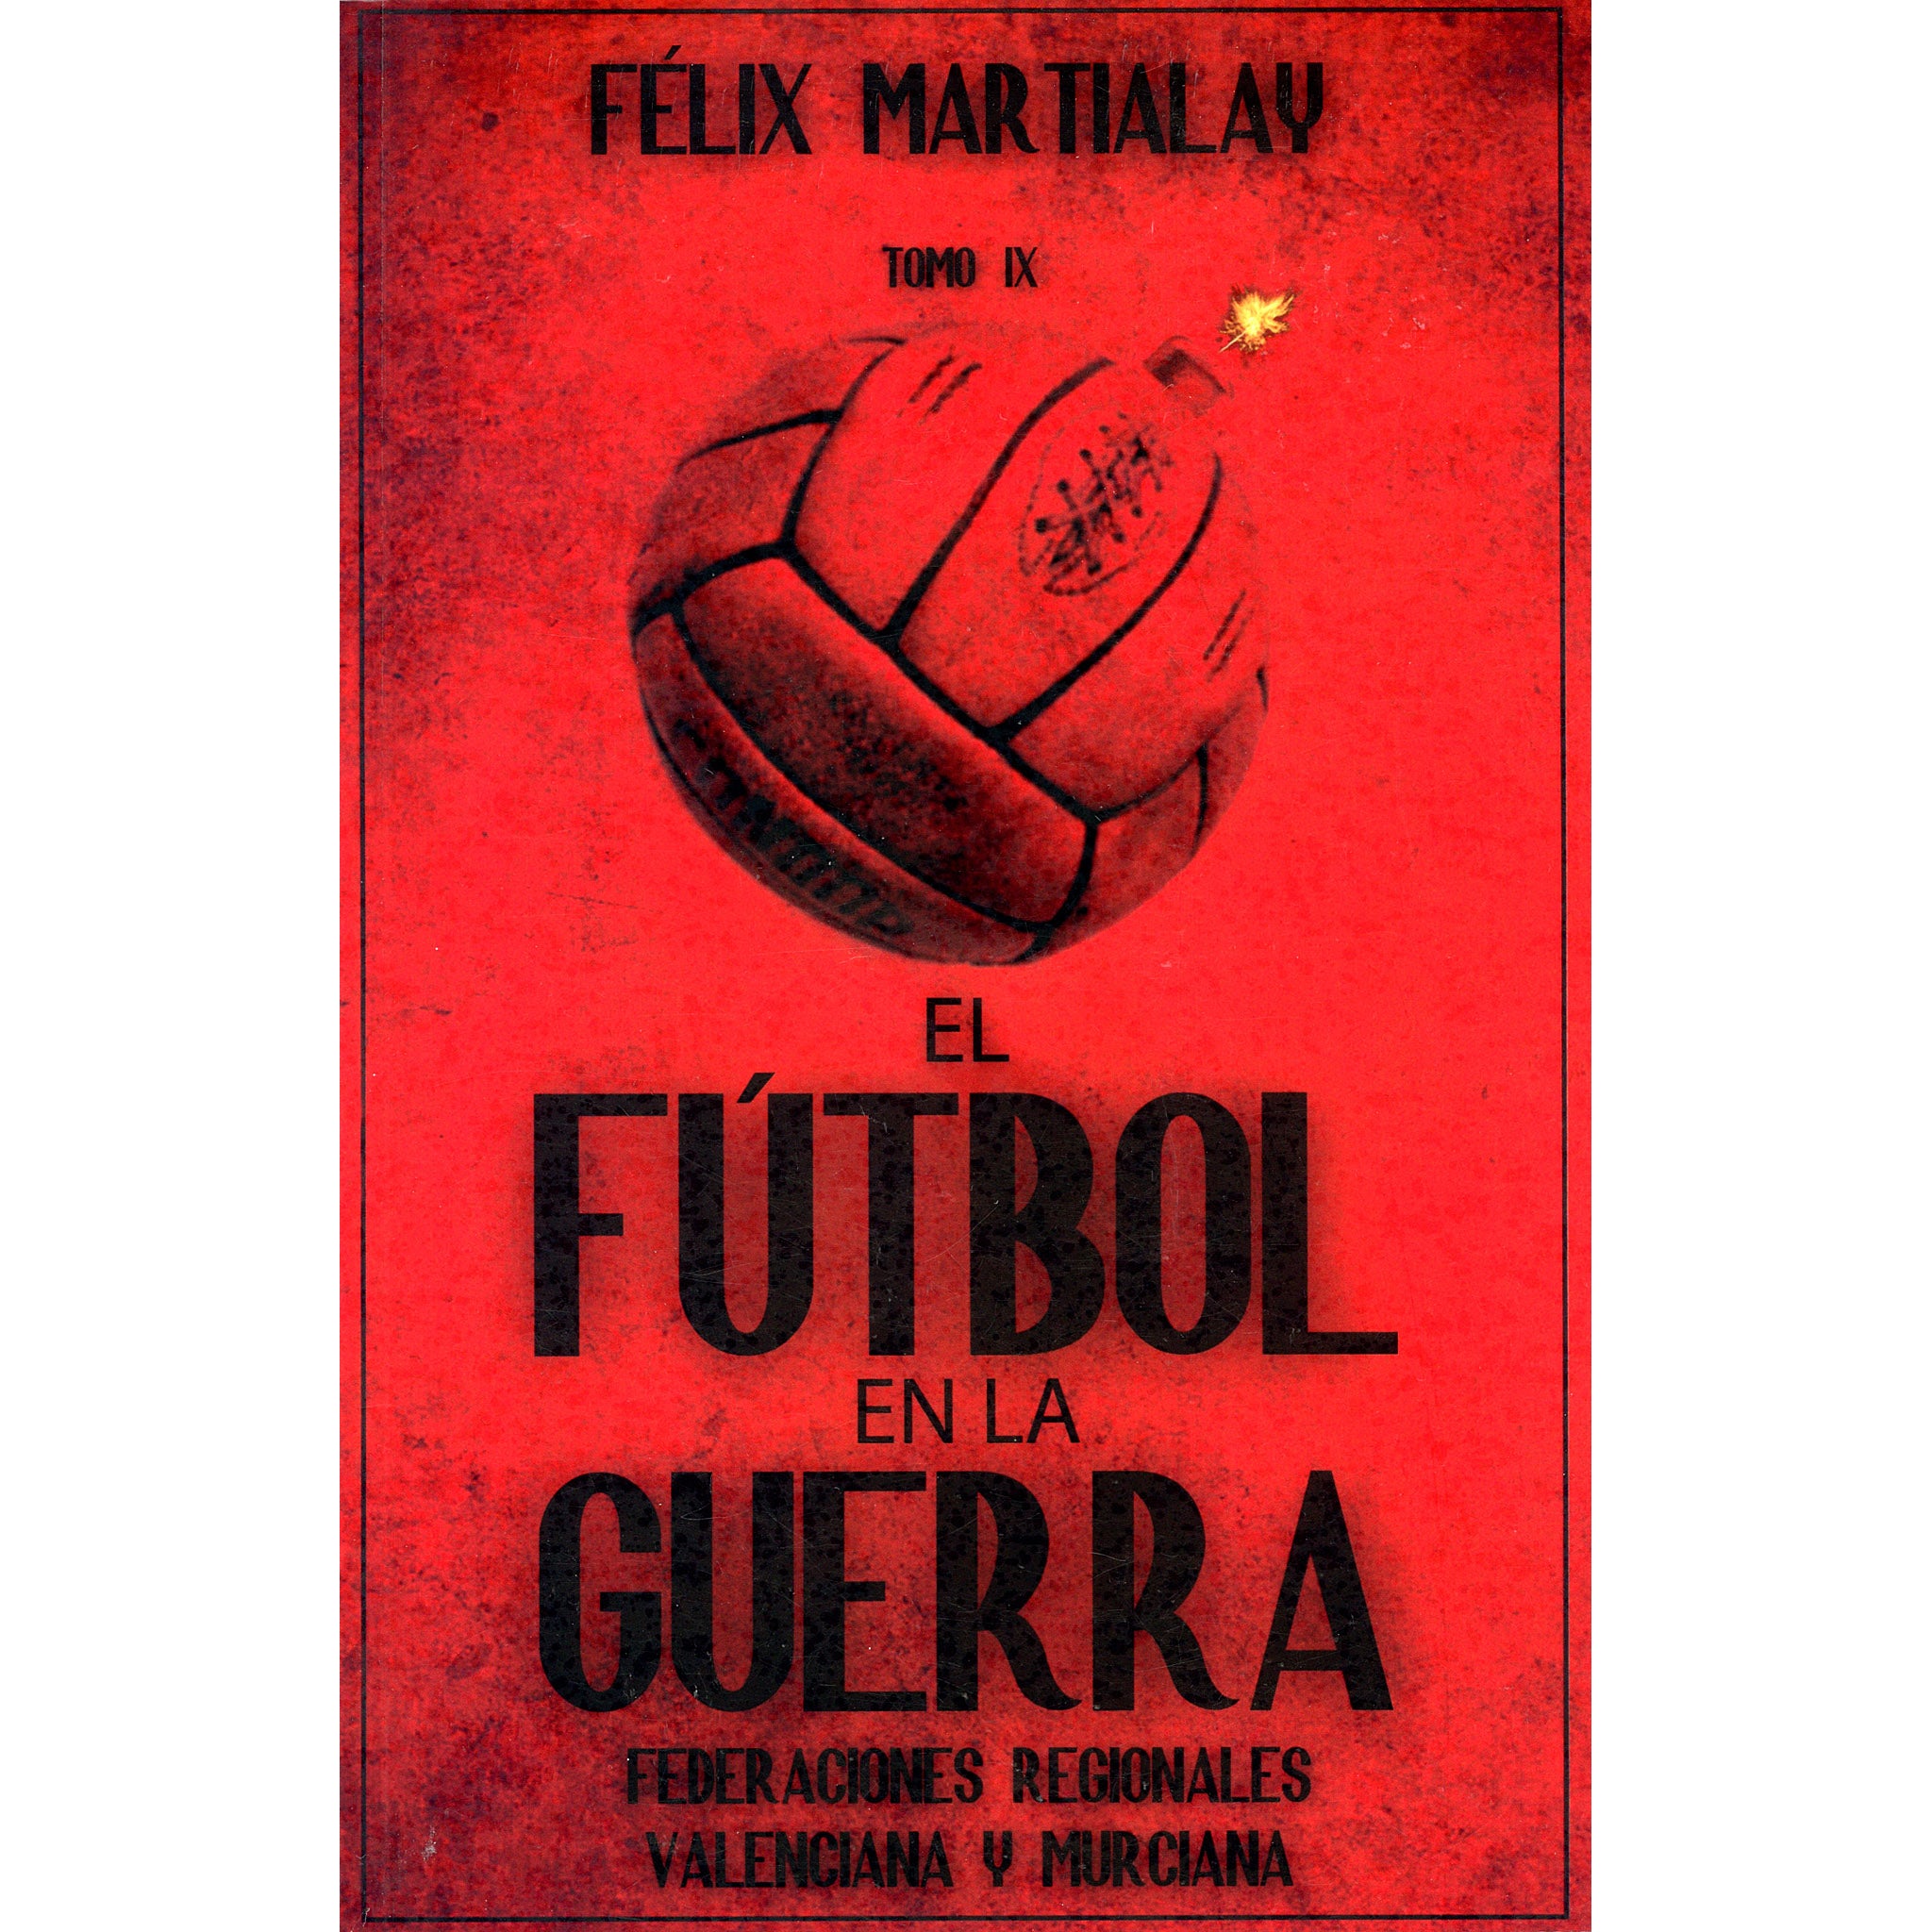 El Futbol en la Guerra Tomo IX – Federaciones Regionales Valenciana y Murciana (Spanish Civil War History Volume 9)